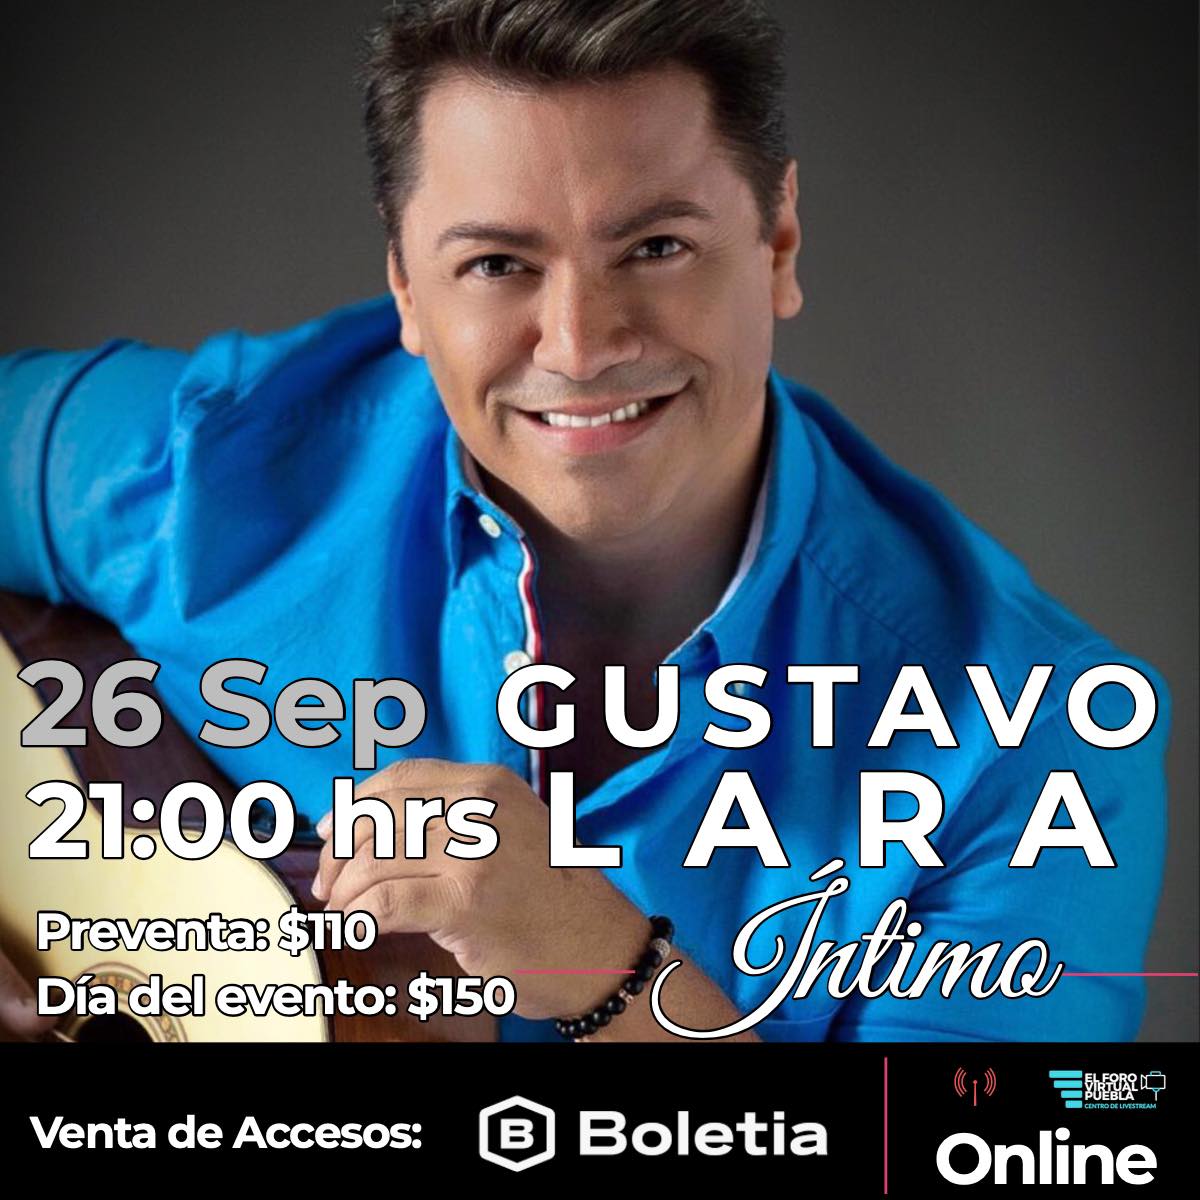 Gustavo Lara ofrecerá el concierto online “Íntimo”, en el que interpretará todos sus éxitos